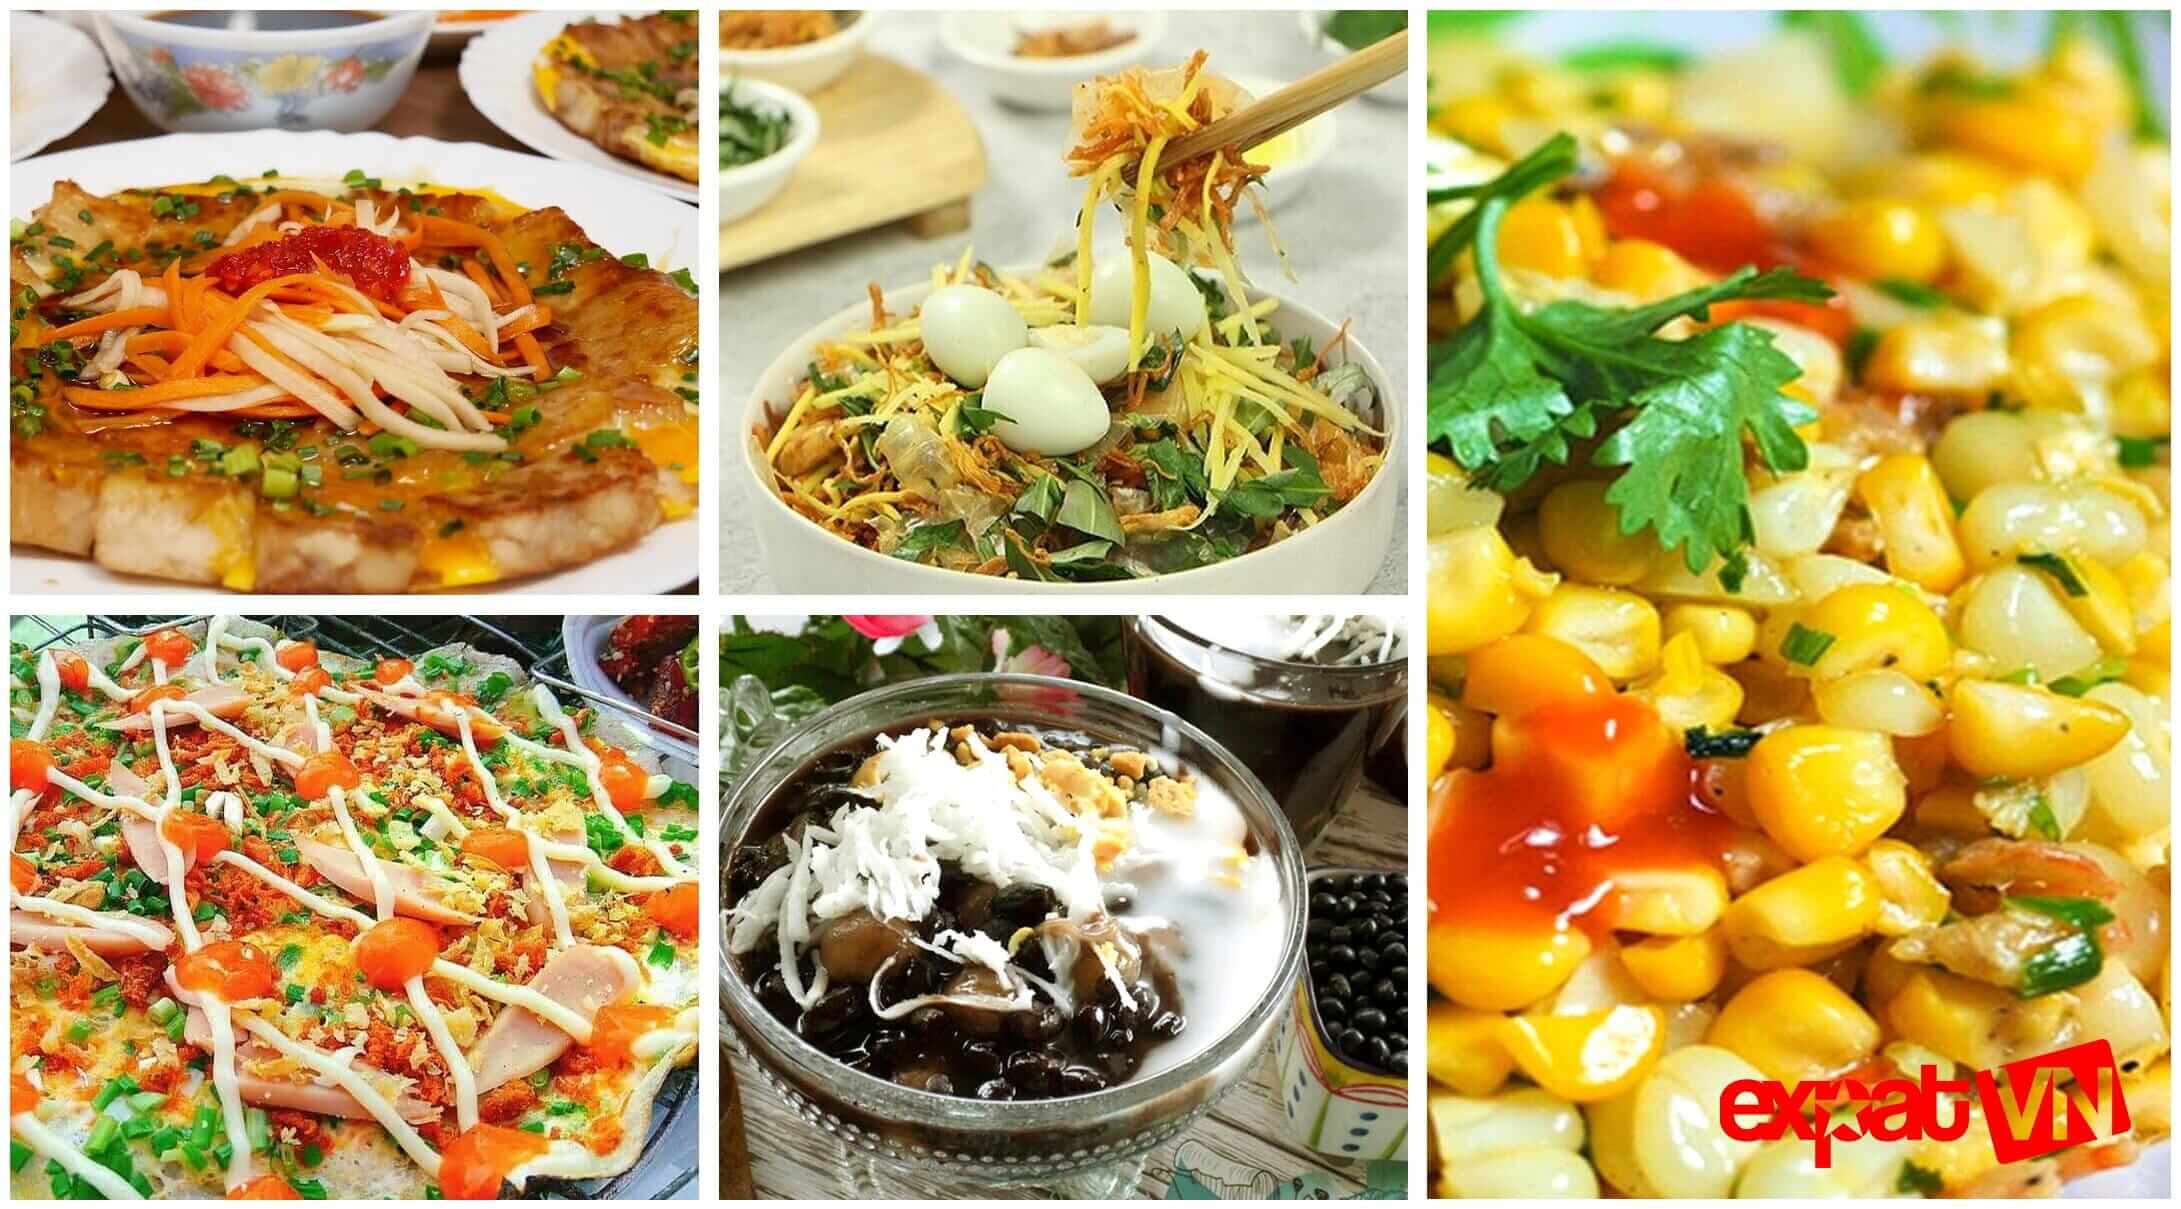 Popular street foods in Vietnam